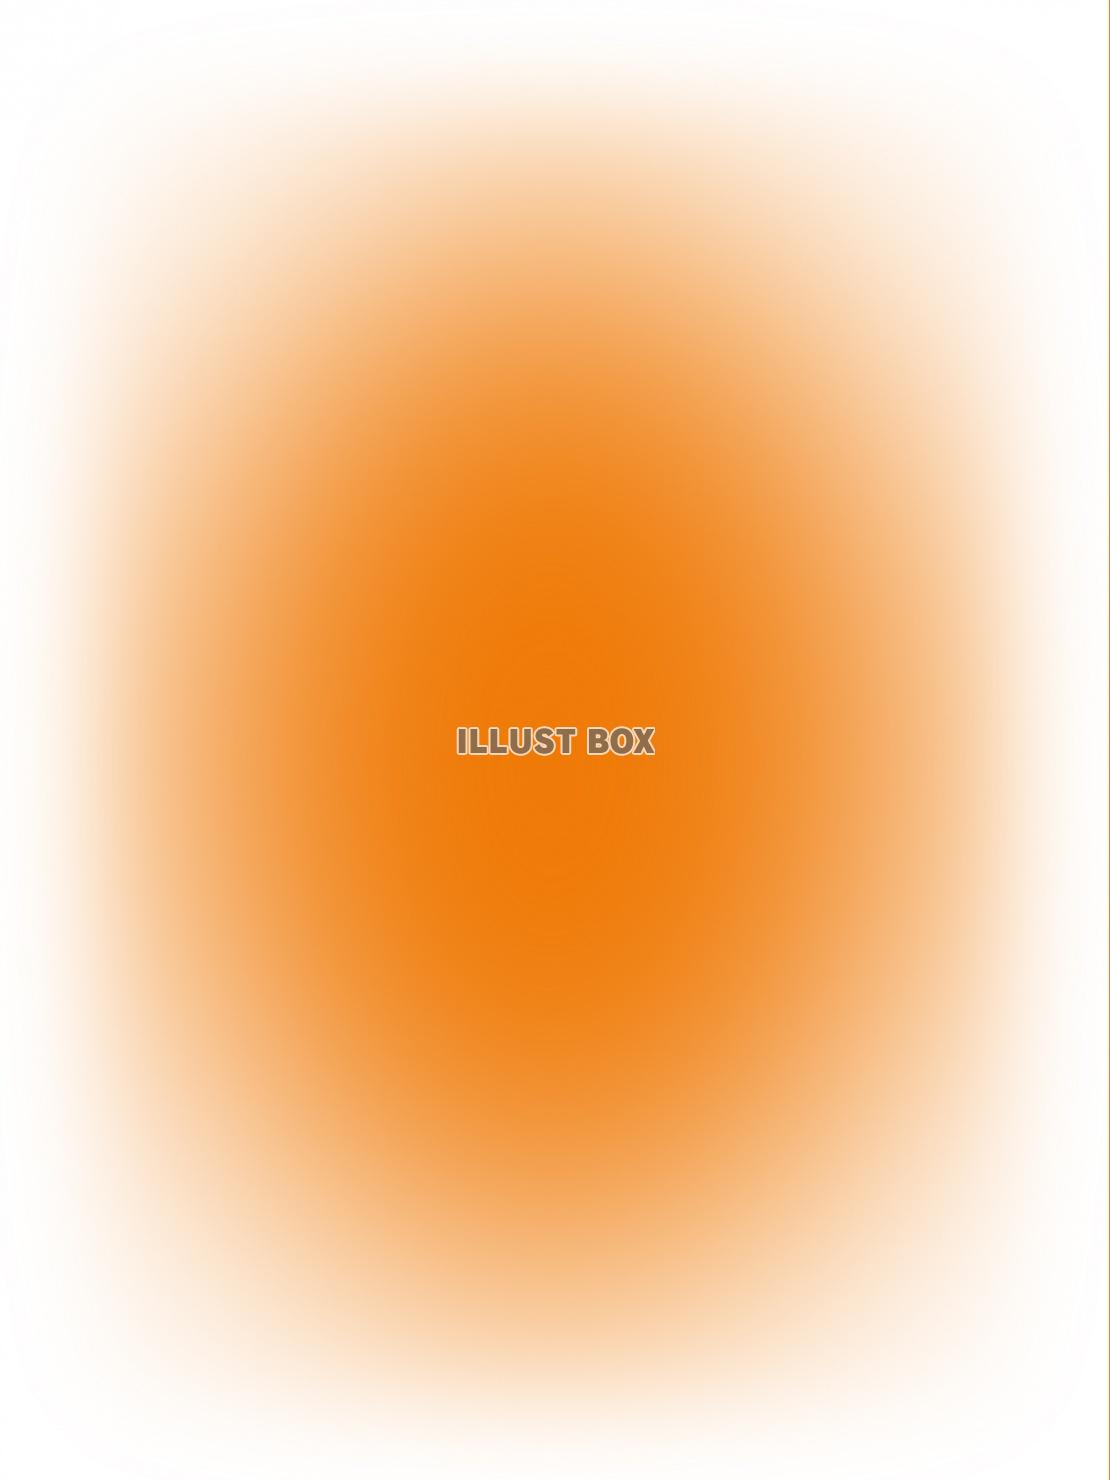 白とオレンジ色の壁紙画像シンプル背景素材イラスト